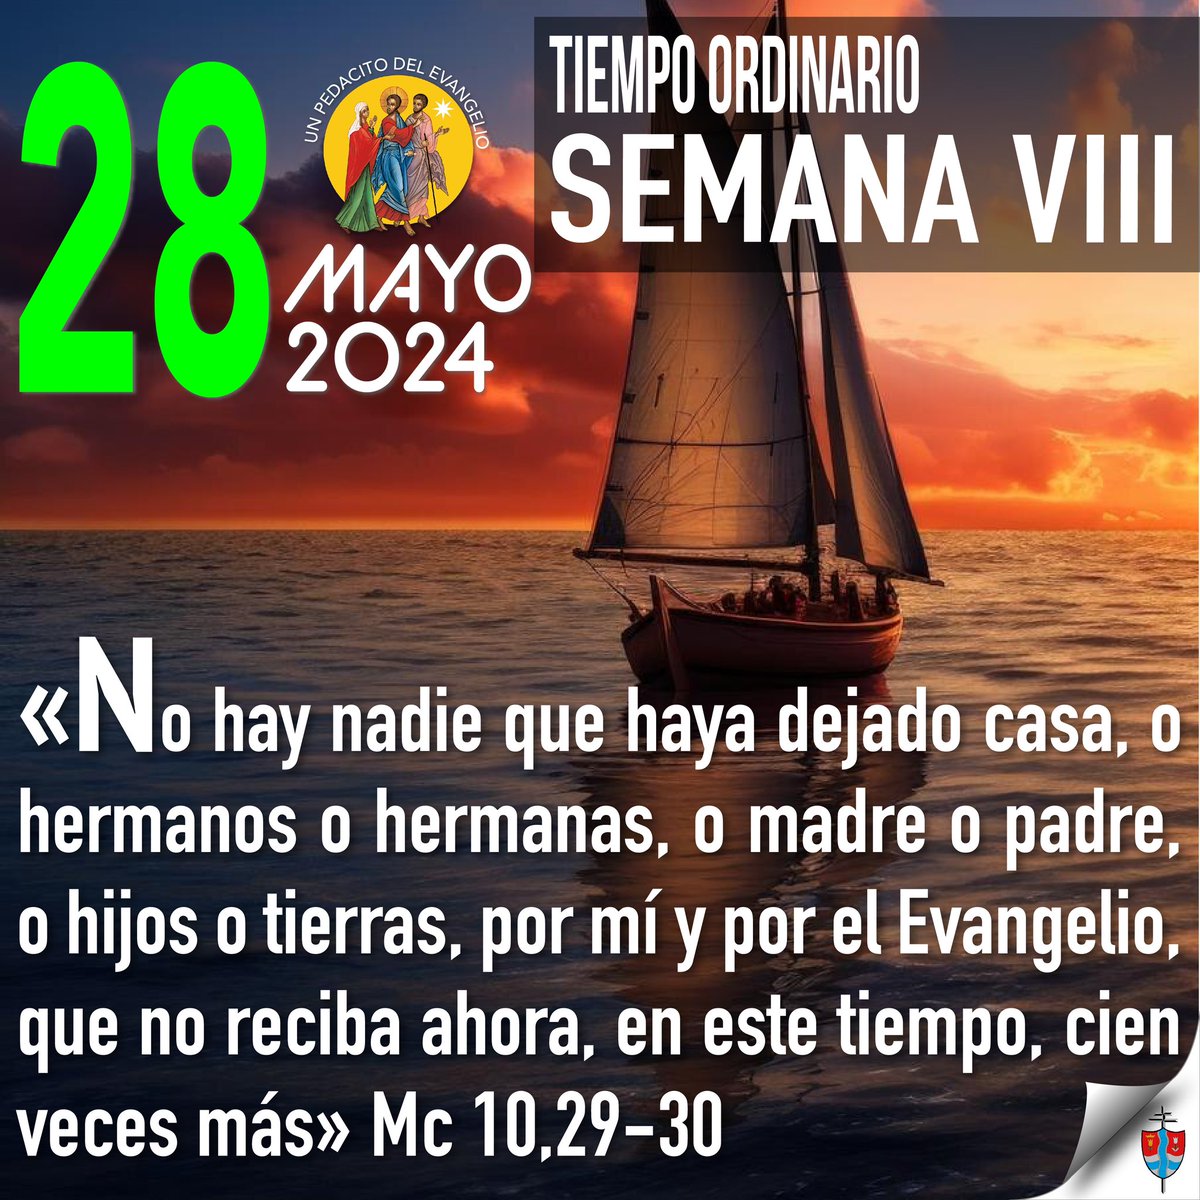 🛐 Un pedacito de Evangelio mayo 28 de 2024•Semana VIII del Tiempo Ordinario

#Evangeliodeldía #TIempoOrdinario #TuPalabraDaVida